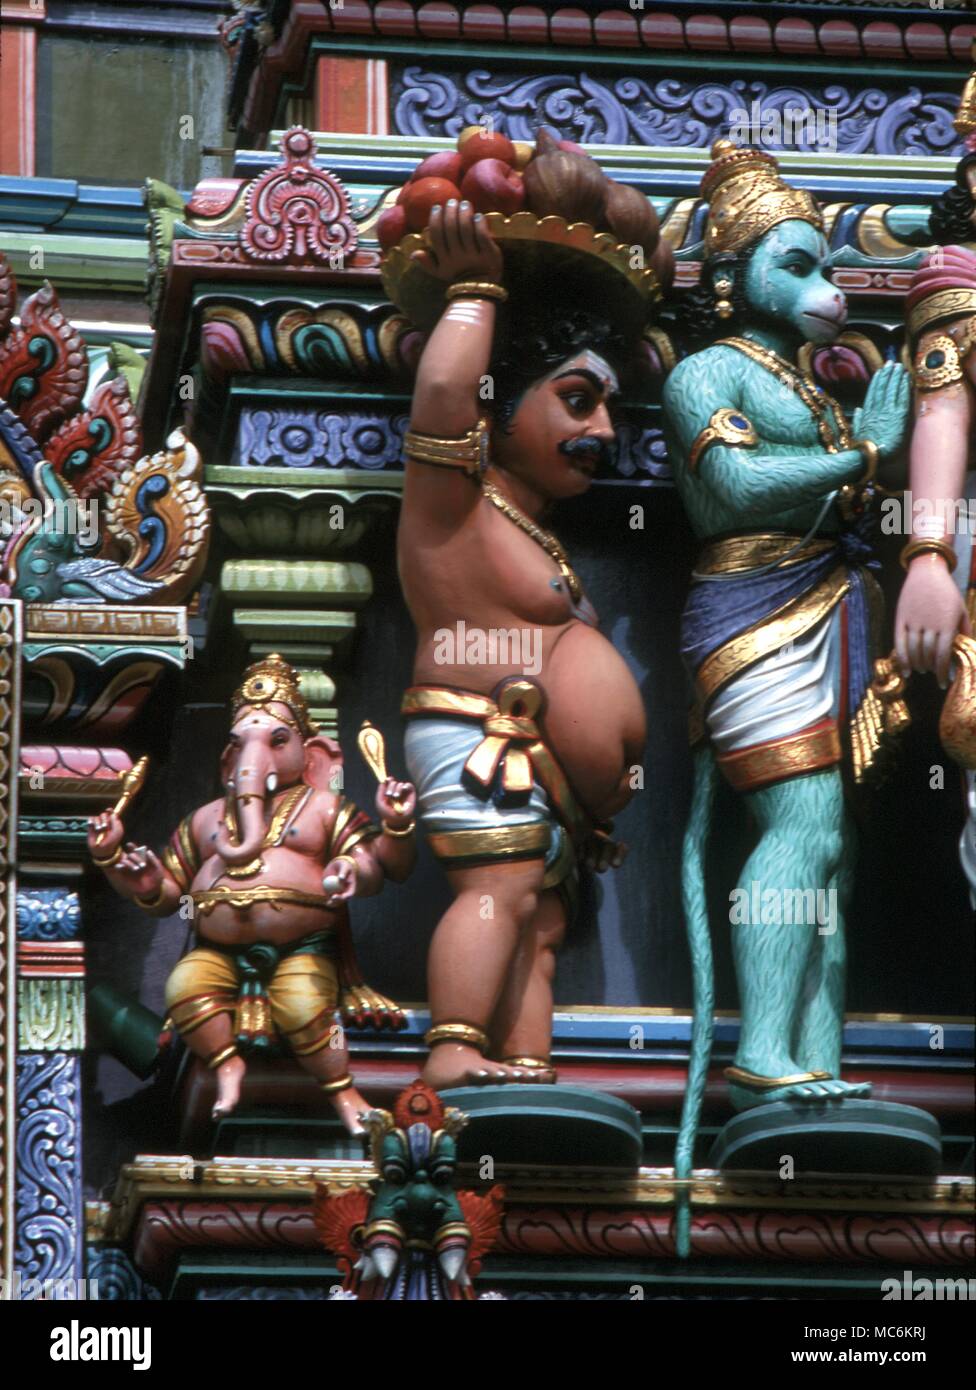 Hindu Mythology. Ganesa, elephant-headed god of wisdom with Vamana, the dwarf and Hanuman, the monkey-god. Hindu temple in Singapore Stock Photo